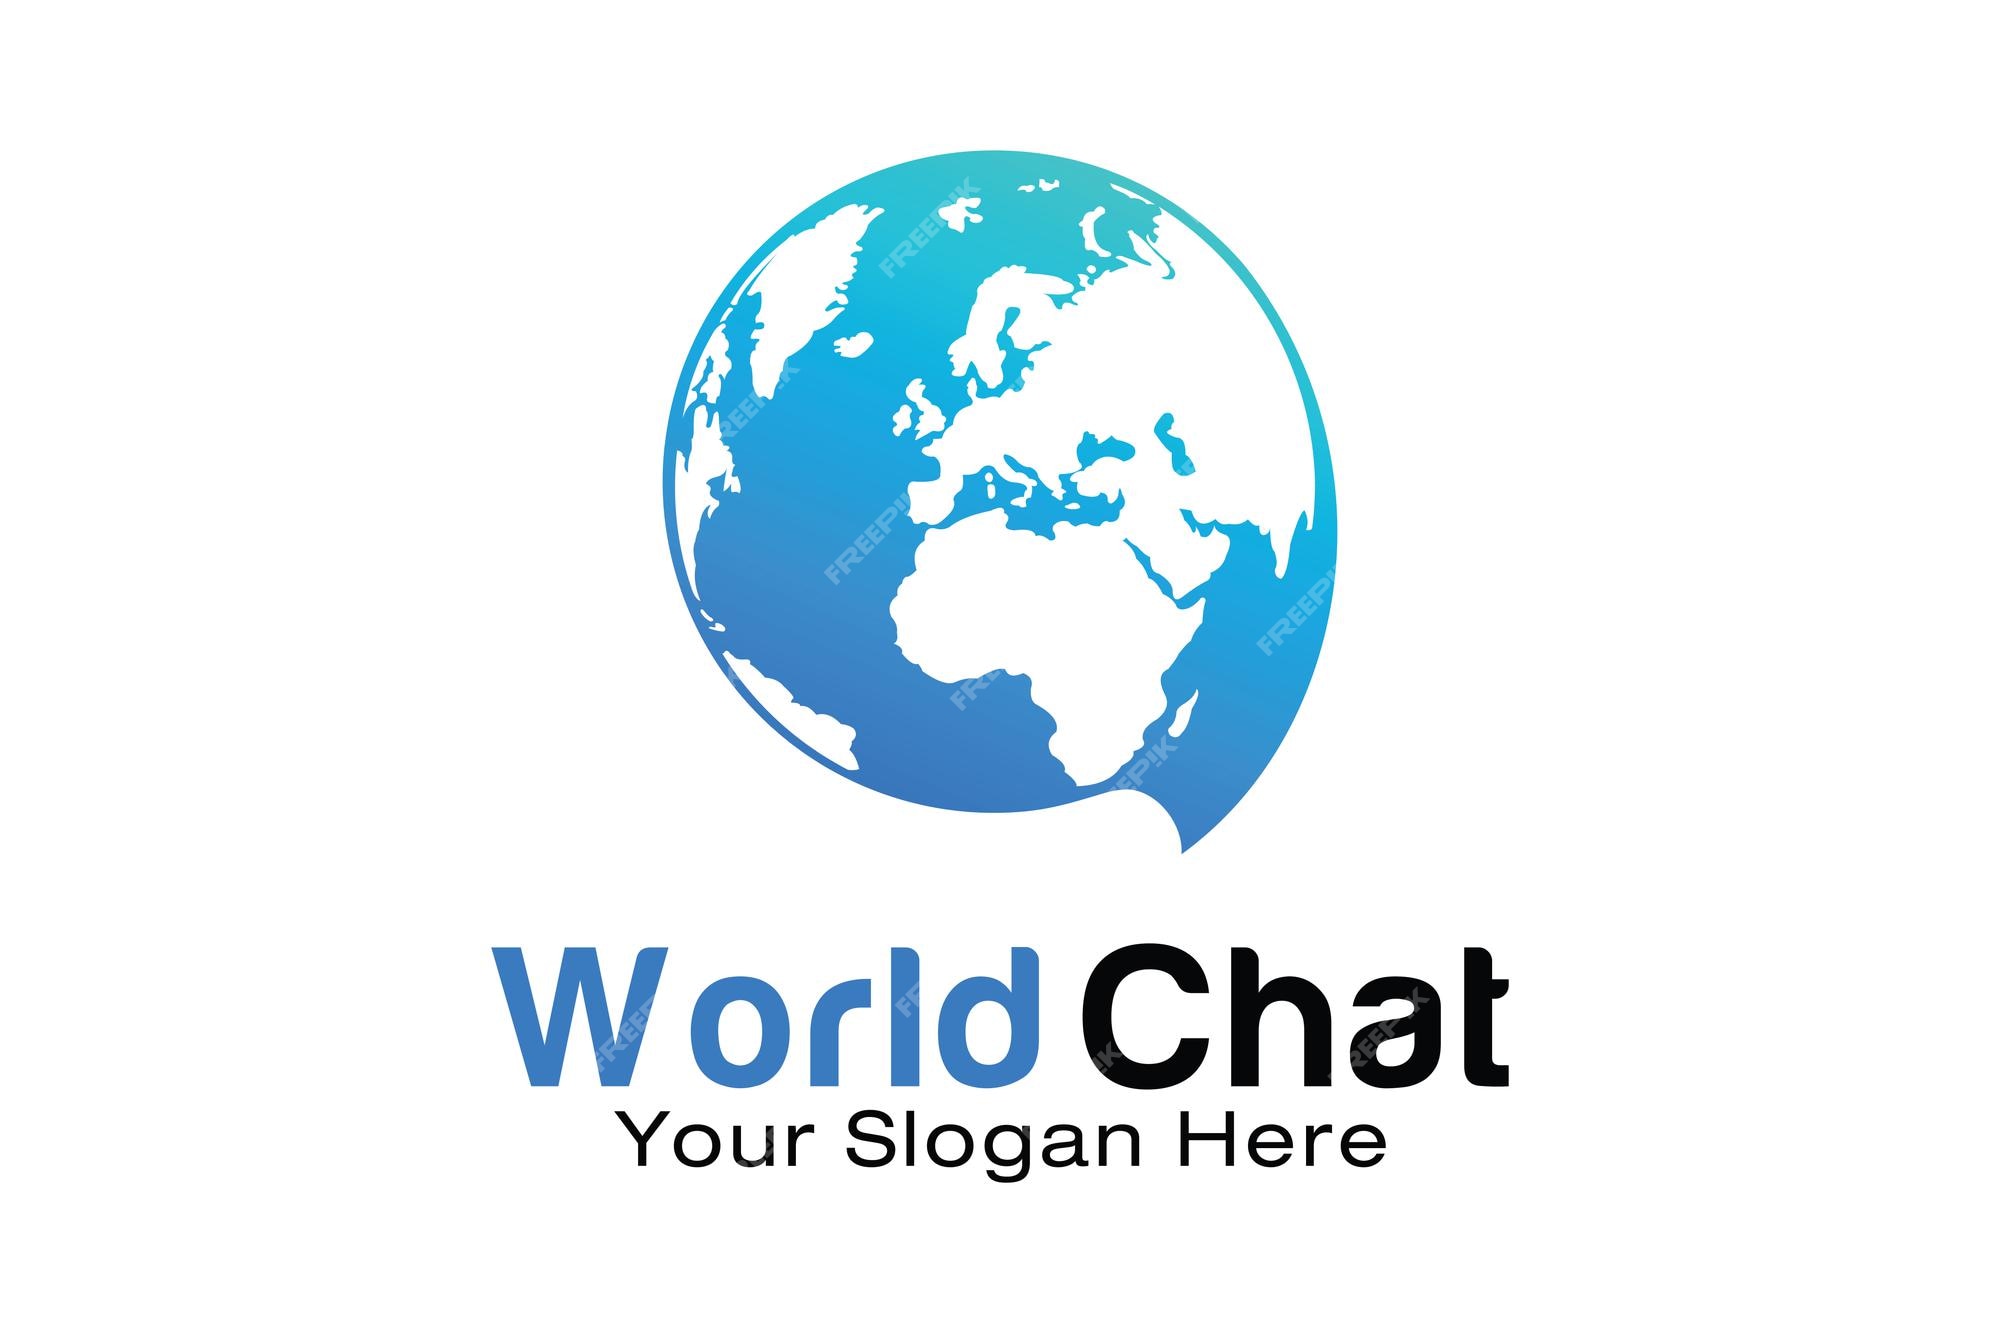 Free world chat